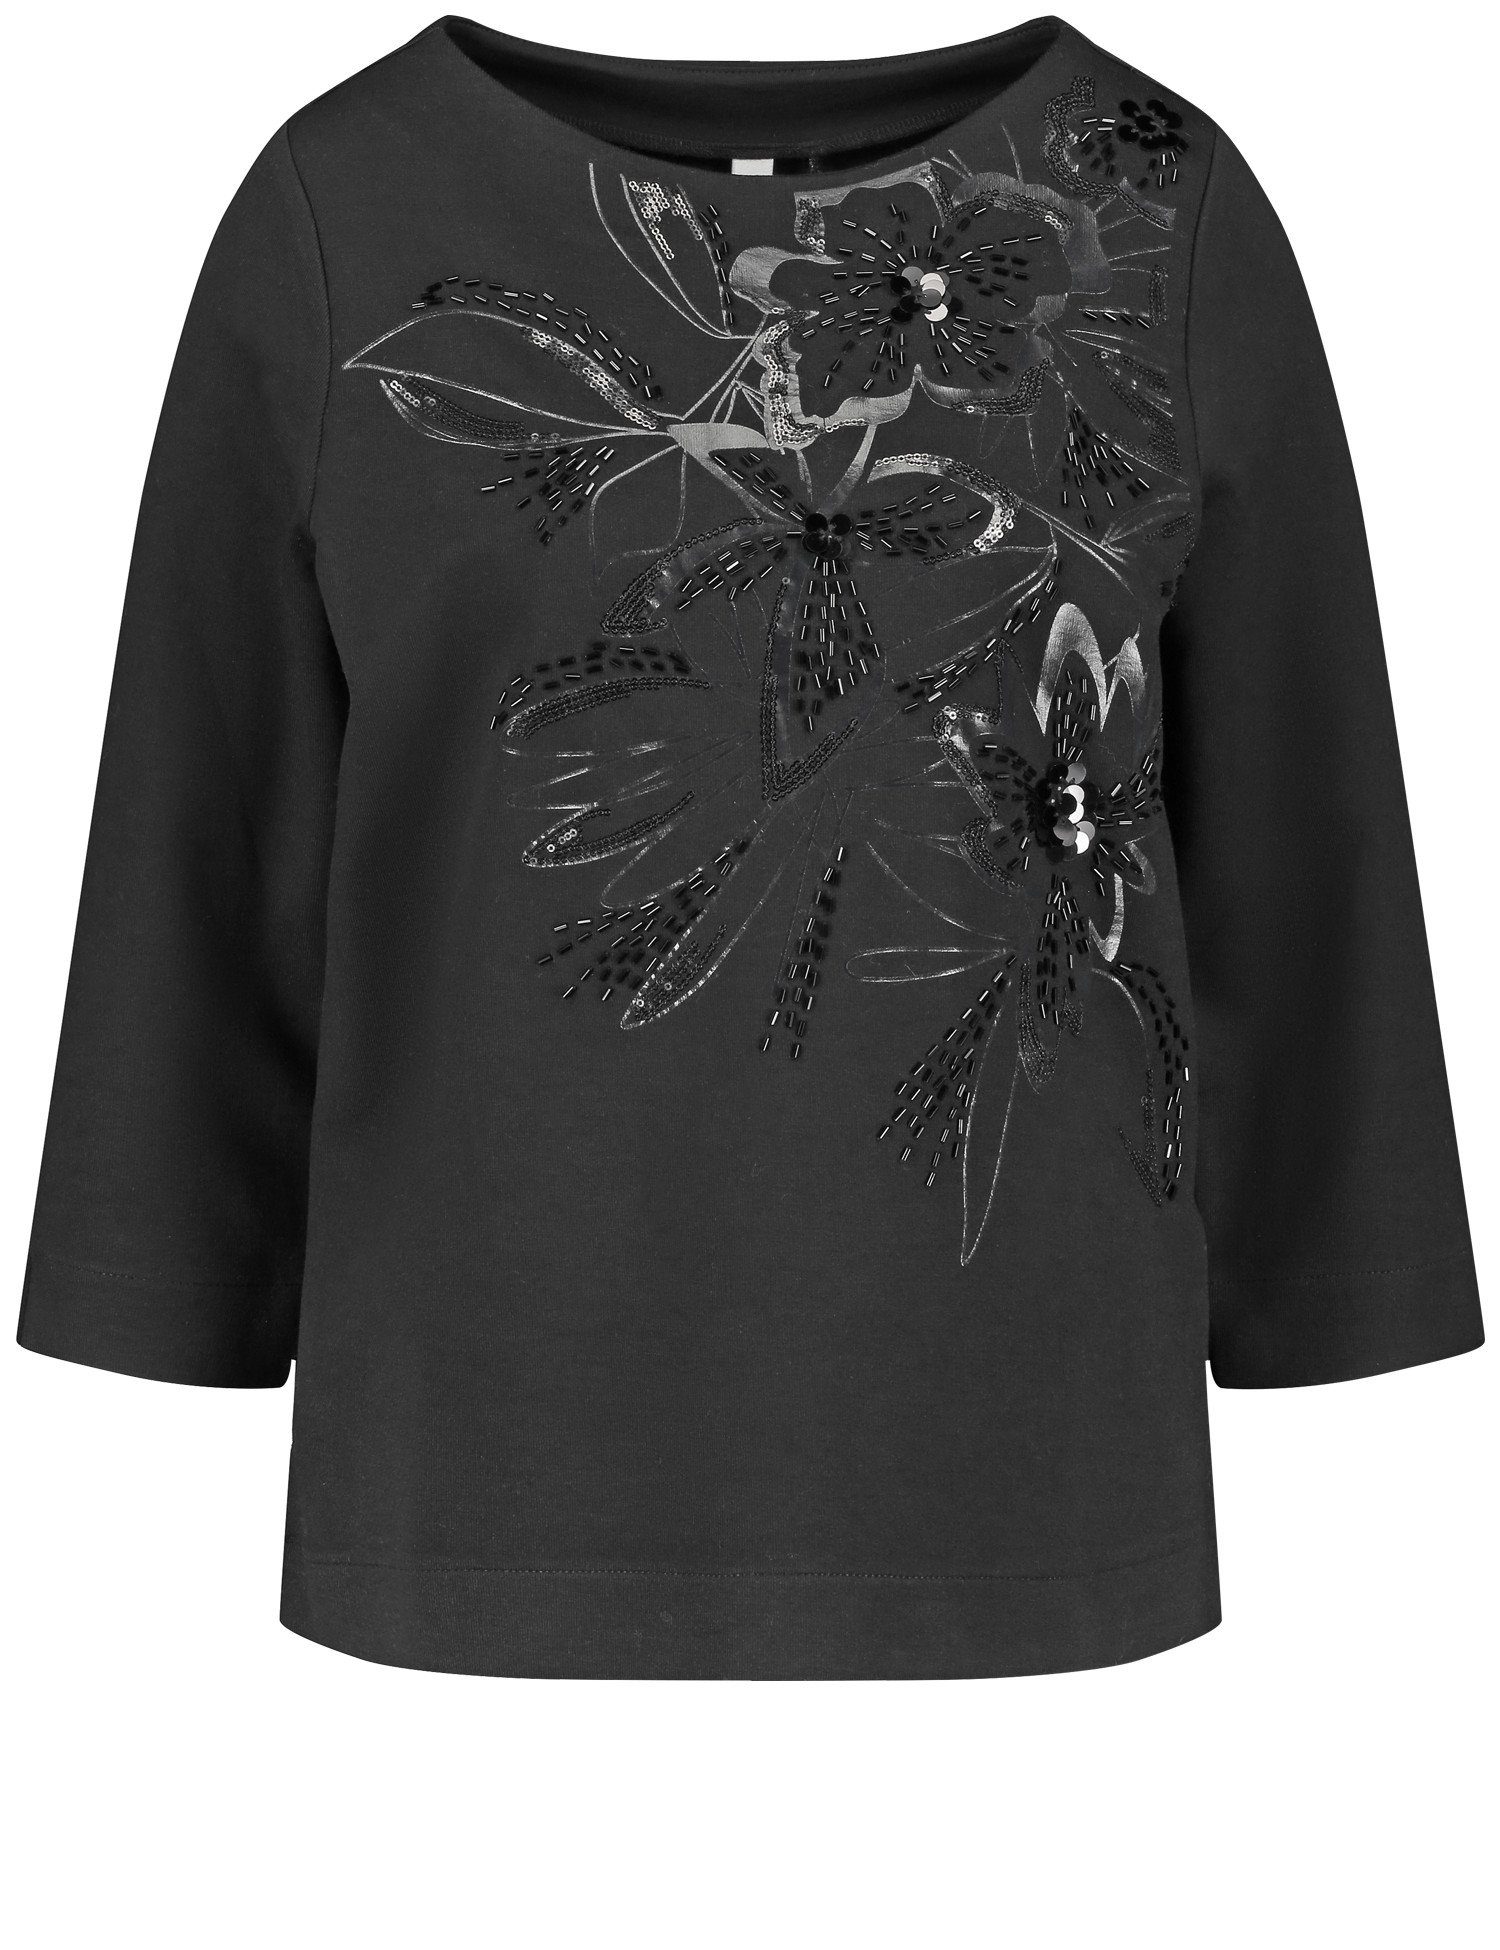 WEBER Ziersteinchen floralem 3/4-Arm-Shirt Dekor mit Arm 3/4 und aus GERRY Shirt Pailletten